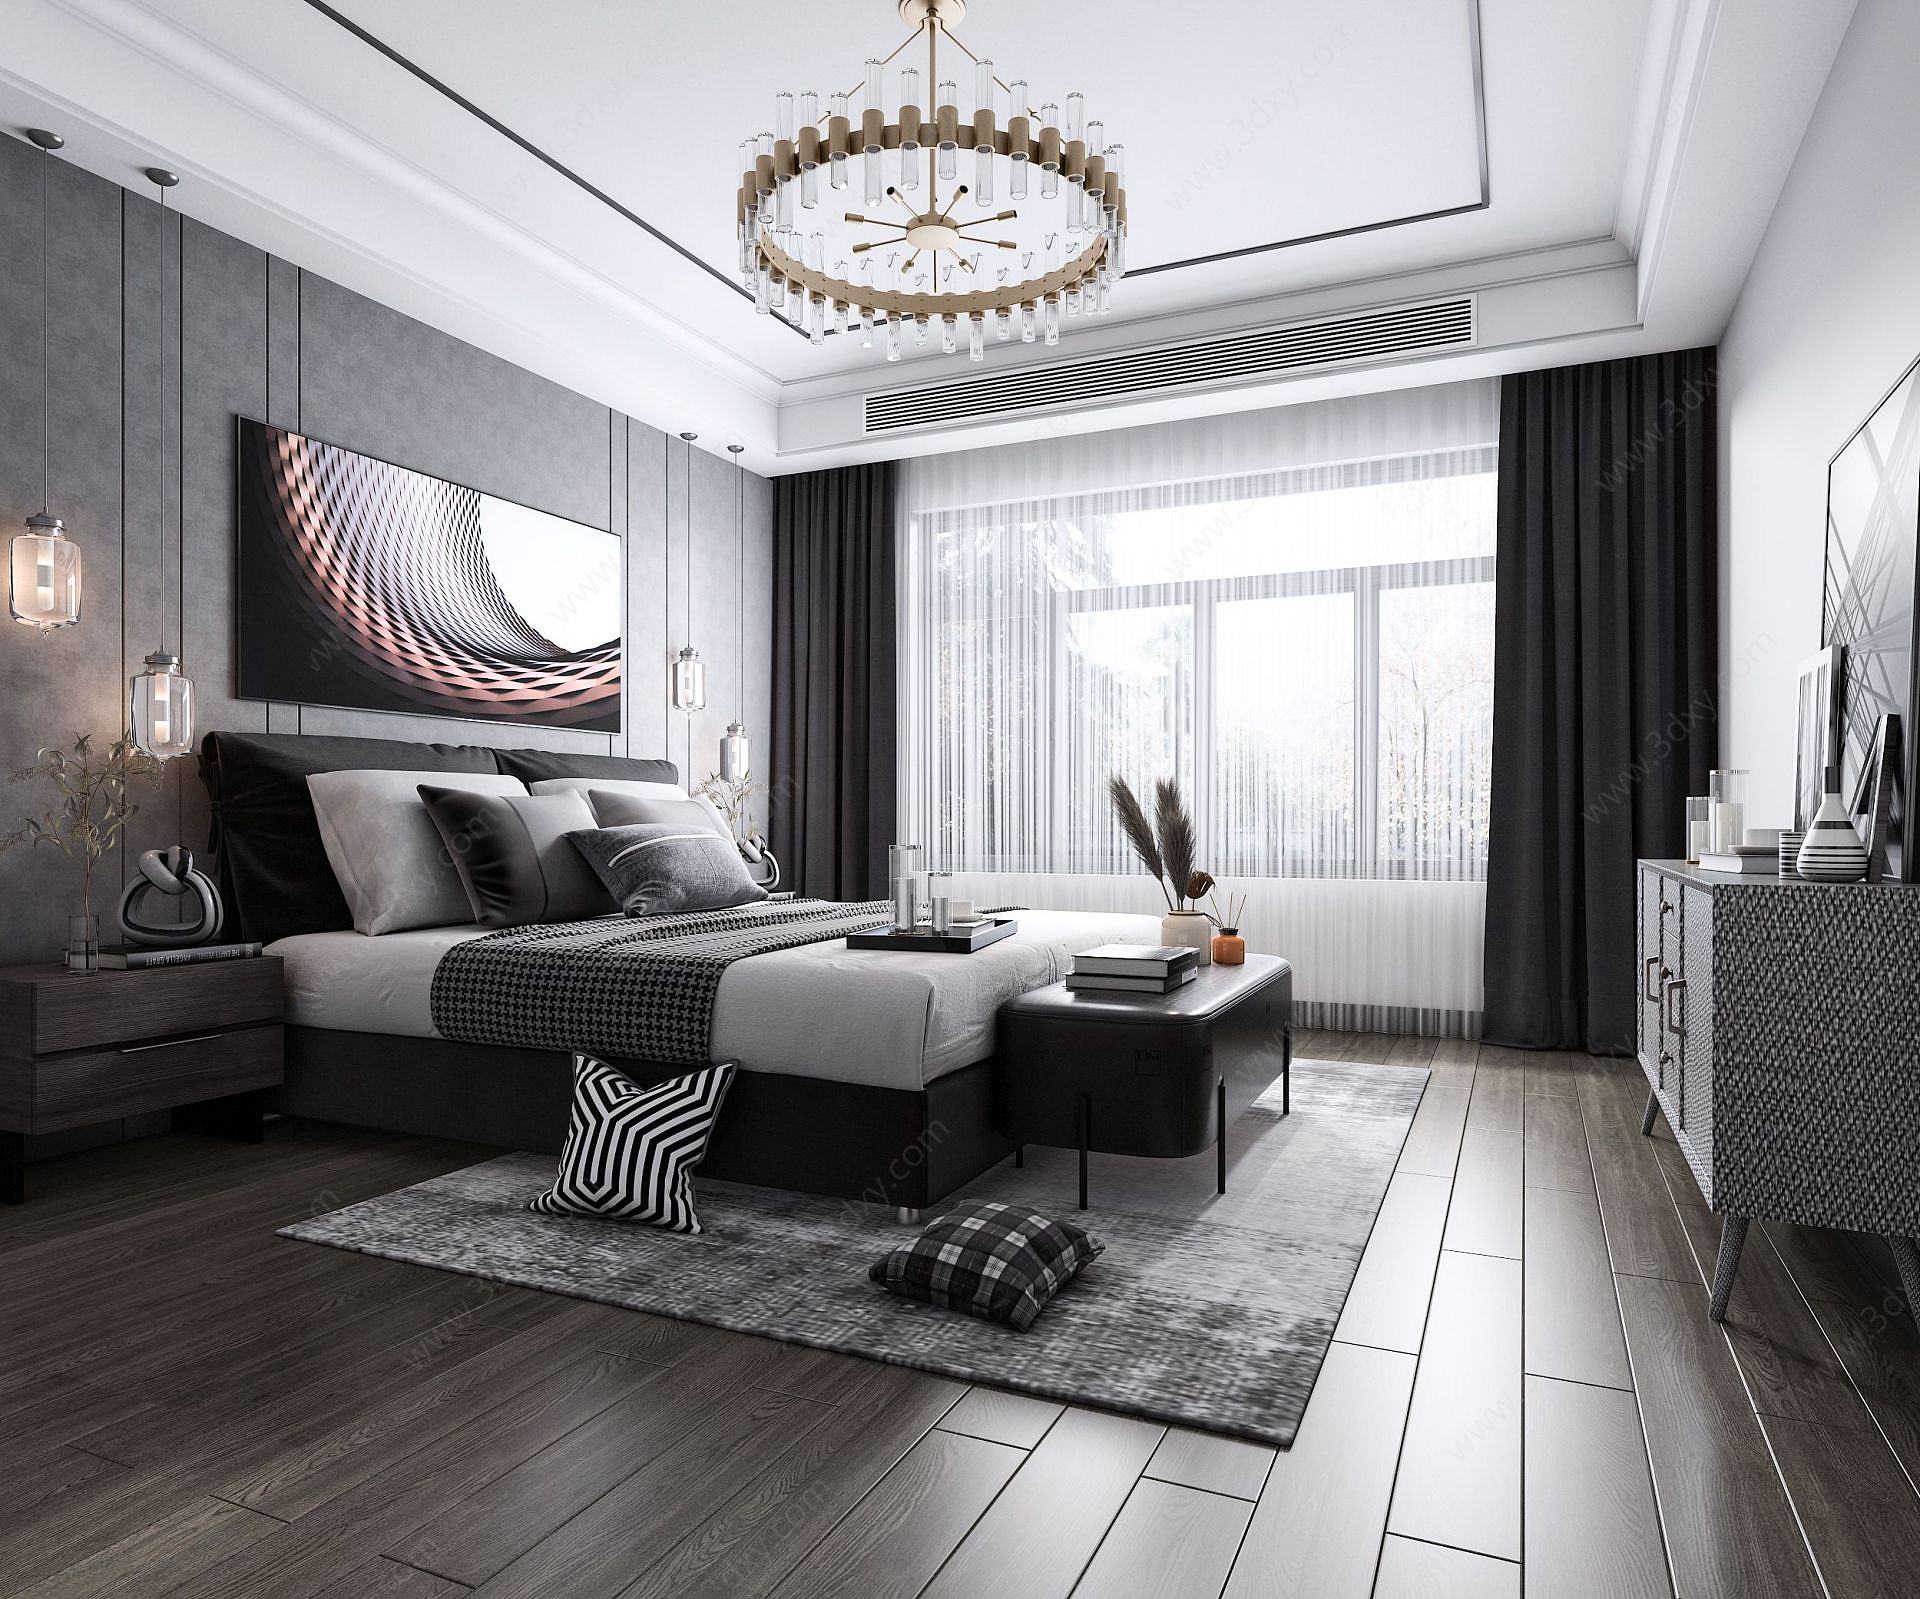 现代轻奢卧室3D模型